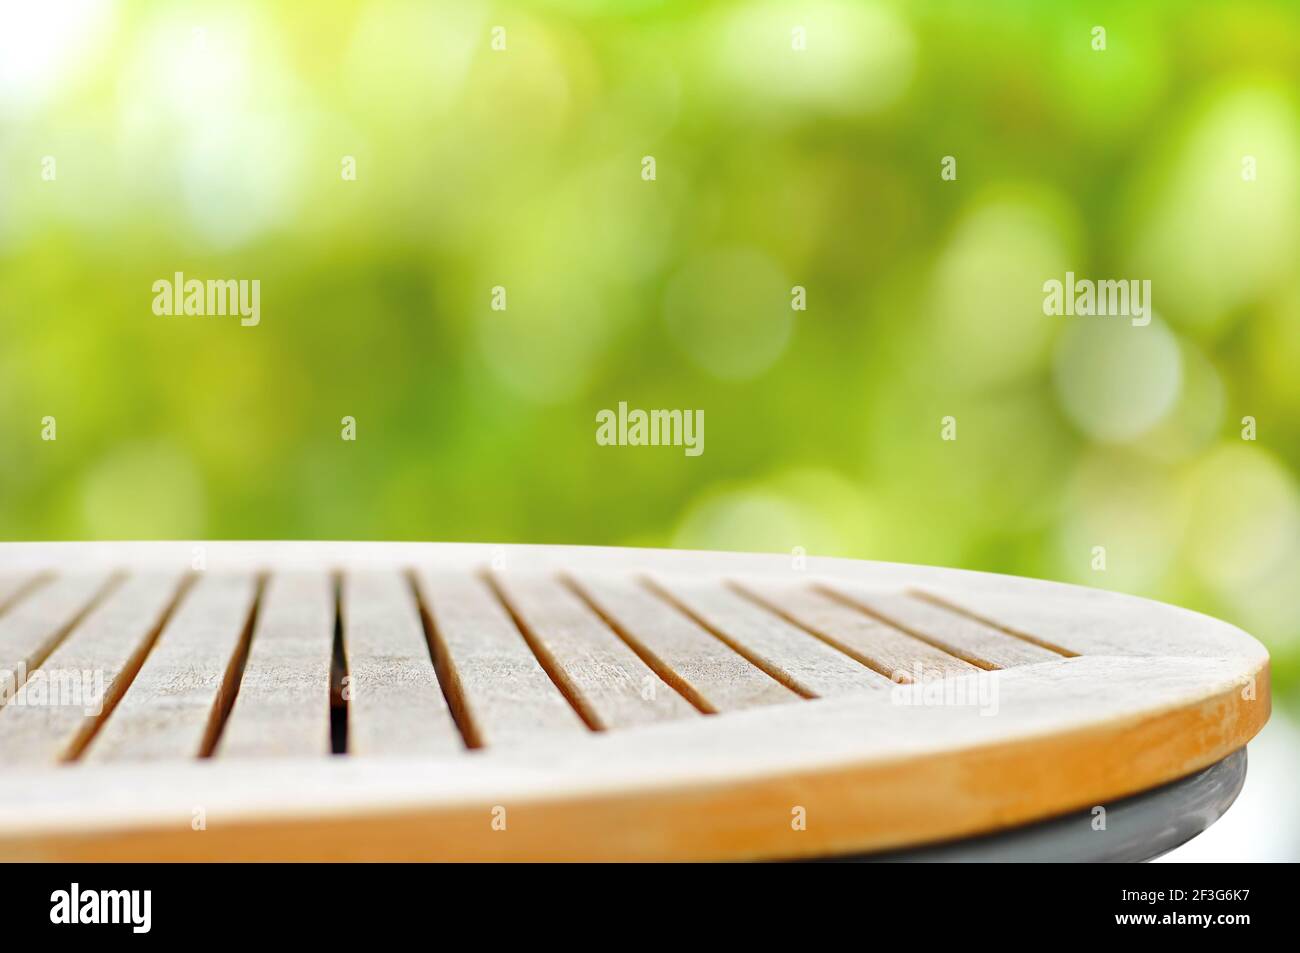 Runde Holztischplatte auf grünem Bokeh abstrakten Hintergrund - Kann zur Anzeige oder Montage Ihrer Produkte verwendet werden Stockfoto